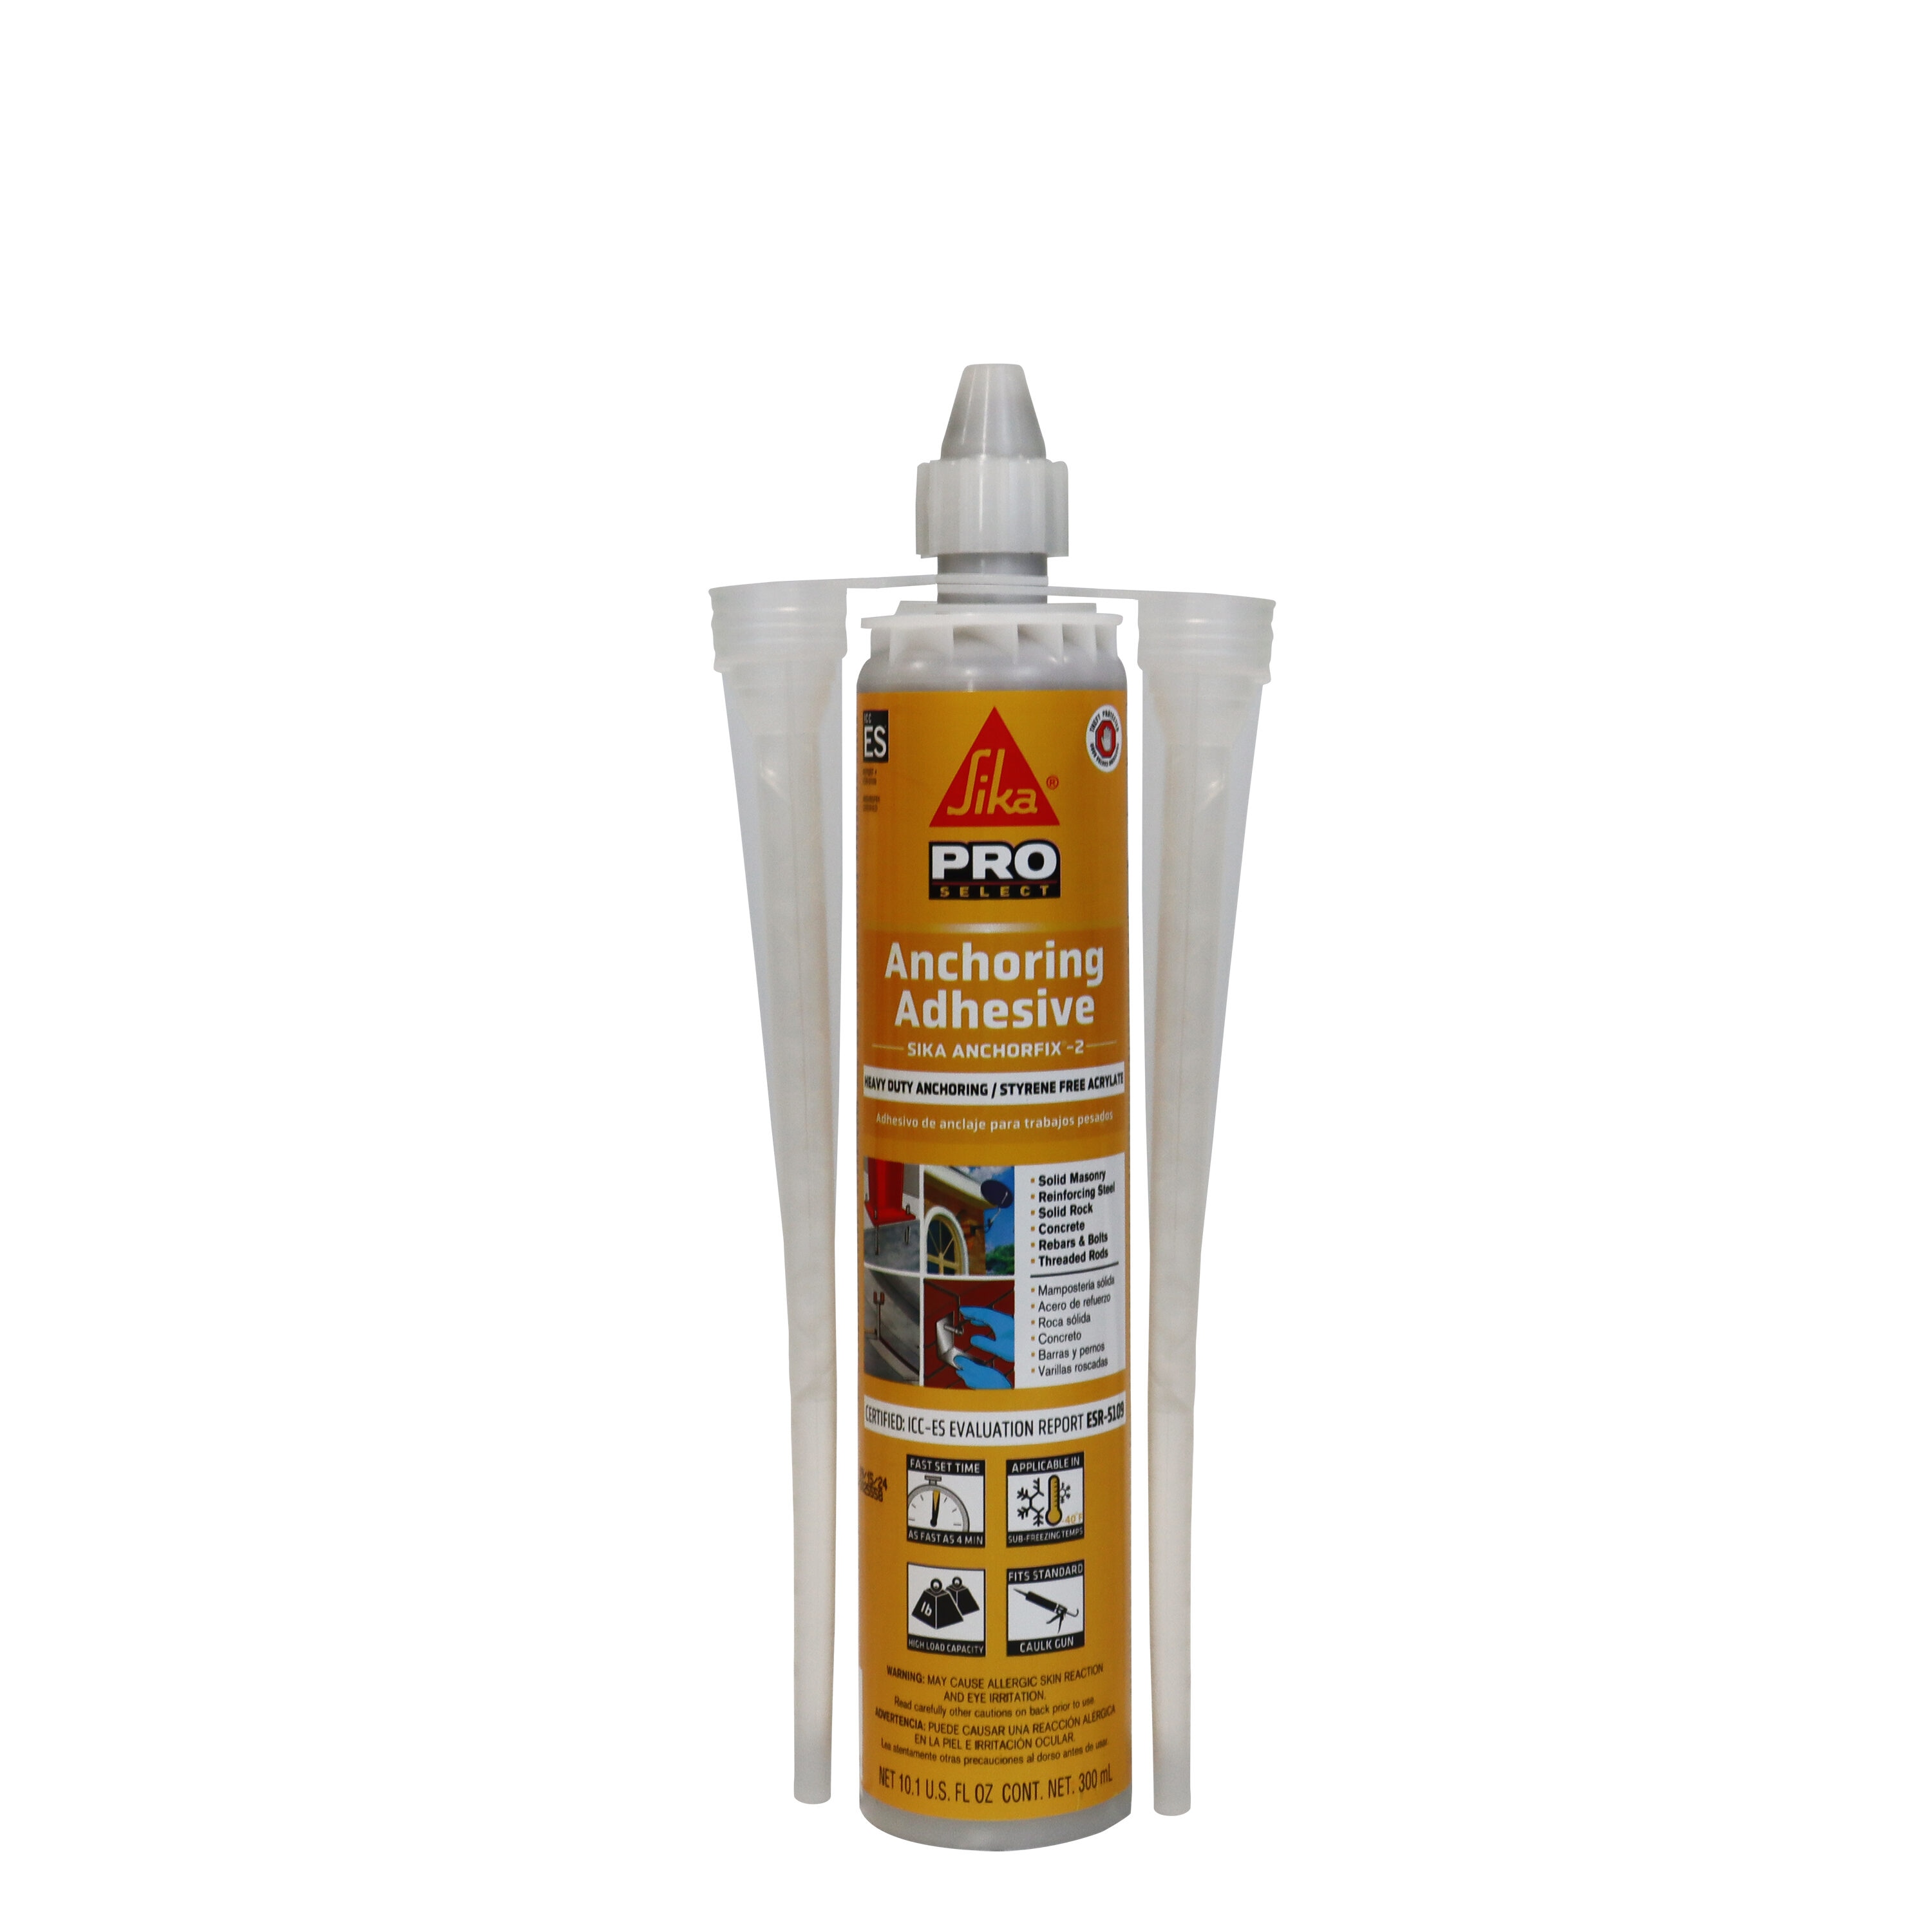 Bird Control Product, E6100 Adhesive Glue